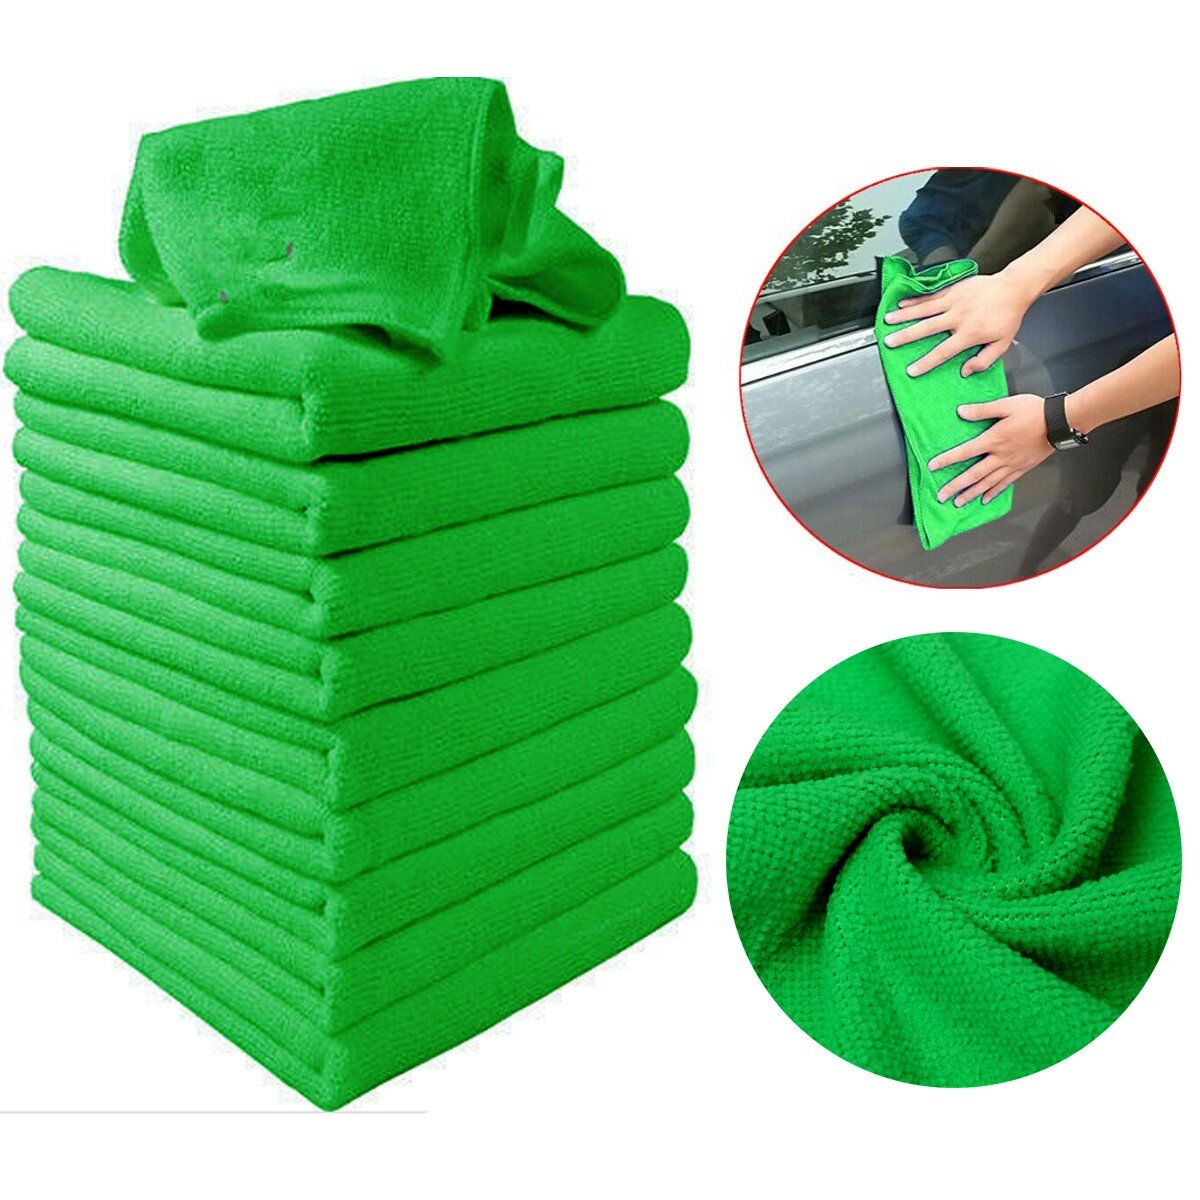 

10шт Soft Ткань для очистки Green Micro Fiber Авто Автоe Duster Полотенце 29x29cm